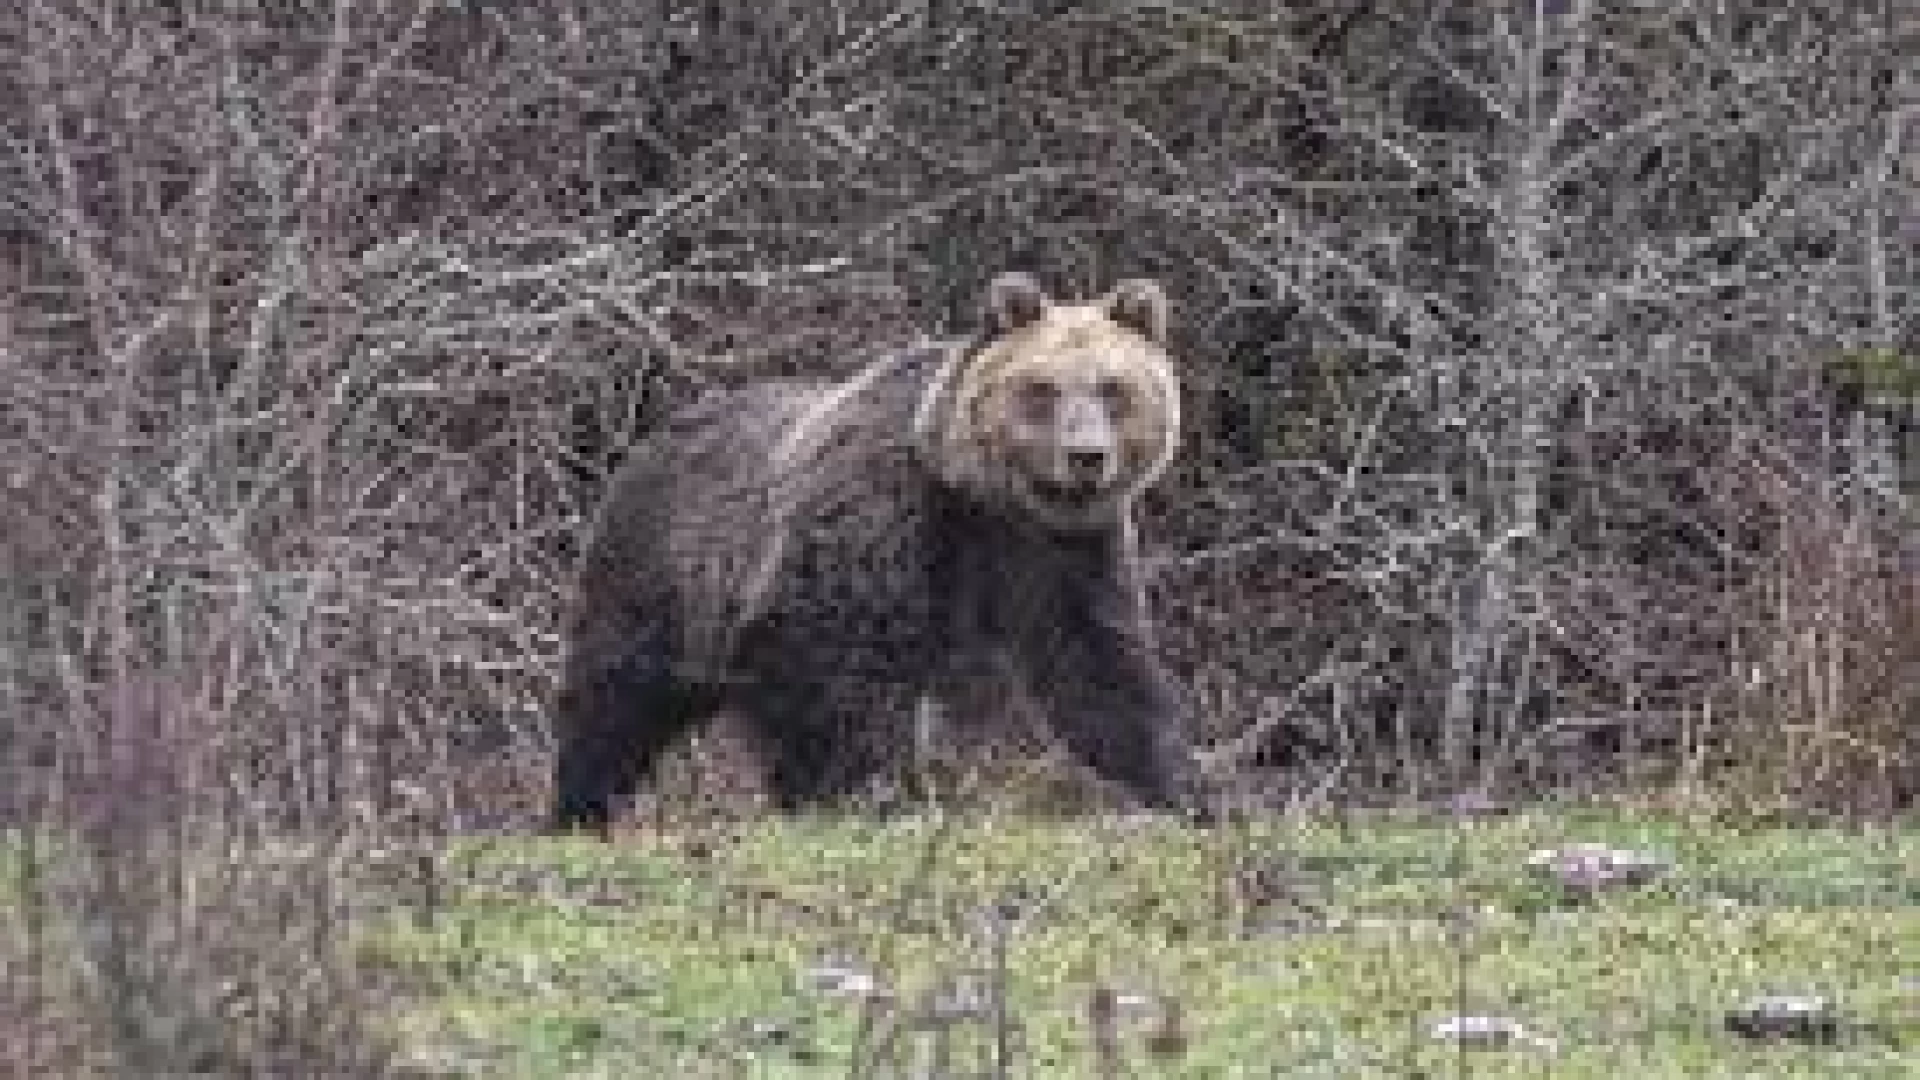 Un nuovo orso in Alto Sangro. Numerosi gli avvistamenti tra Castel Di Sangro e Scontrone. Visitati allevamenti e pollai della zona.